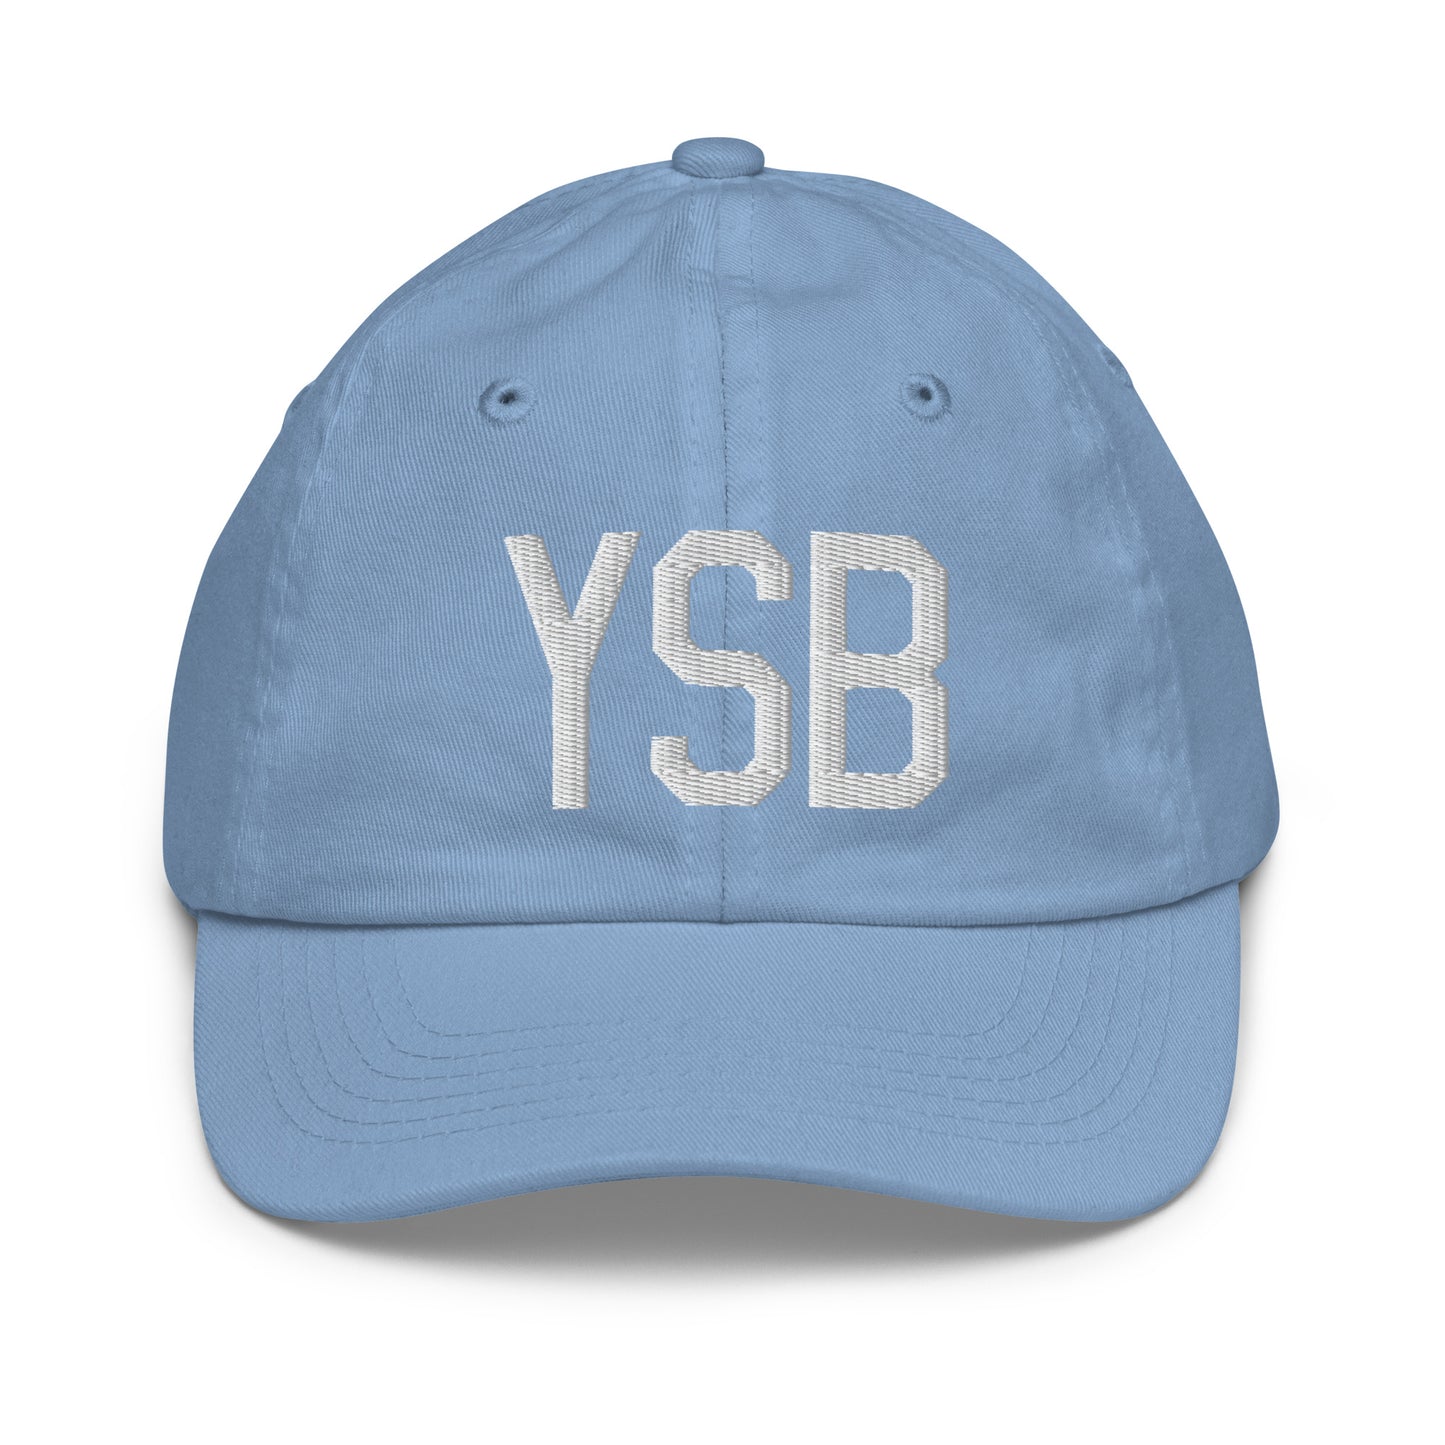 Airport Code Kid's Baseball Cap - White • YSB Sudbury • YHM Designs - Image 22